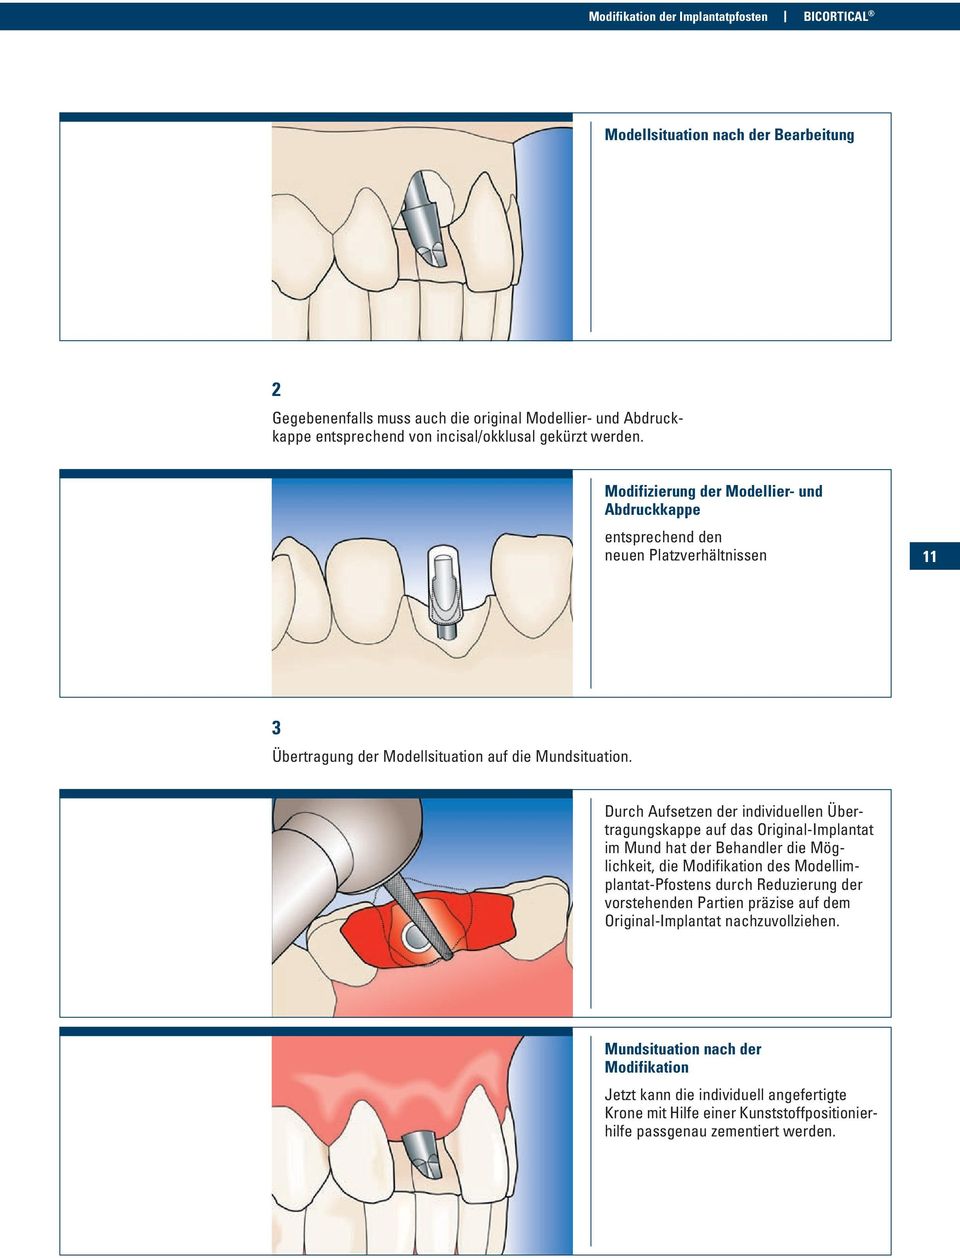 Durch Aufsetzen der individuellen Übertragungskappe auf das Original-Implantat im Mund hat der Behandler die Möglichkeit, die Modifikation des Modellimplantat-Pfostens durch Reduzierung der